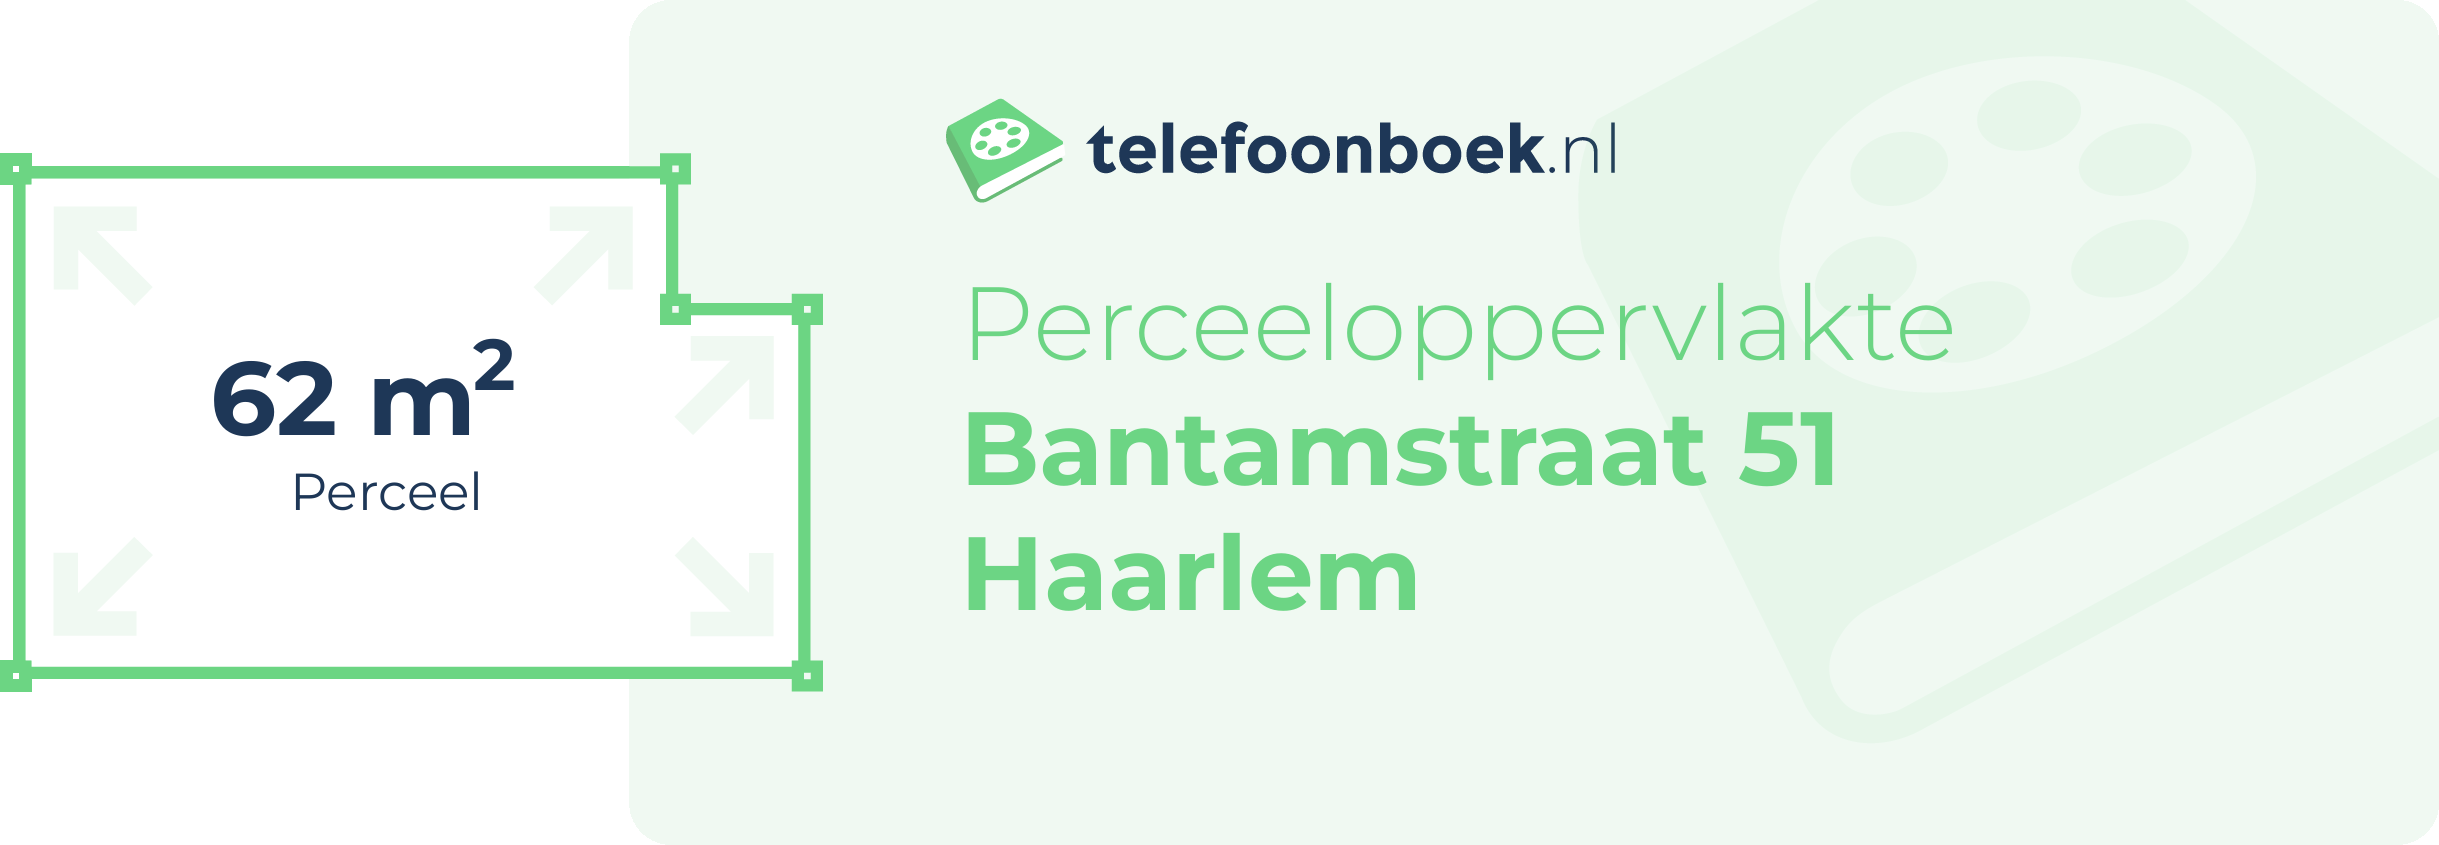 Perceeloppervlakte Bantamstraat 51 Haarlem